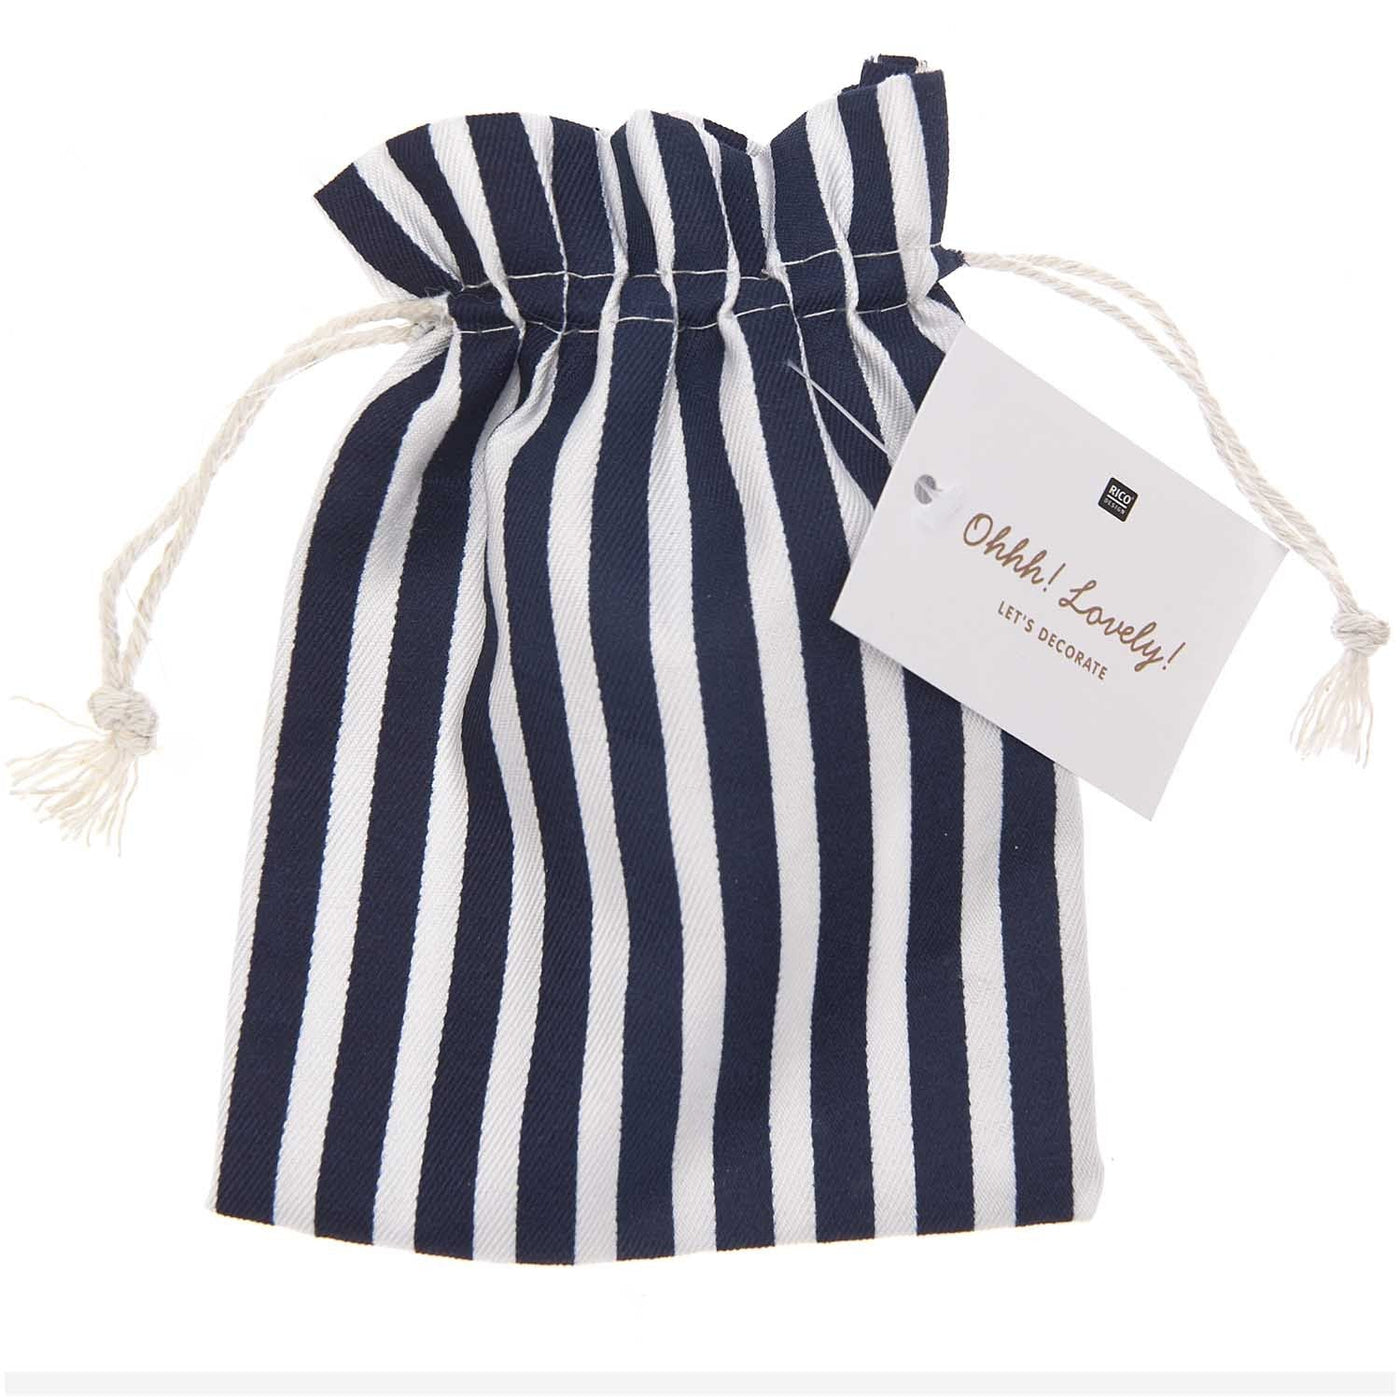 Striped Cotton Drawstring Bag - 11 x 14cm - Blue & White